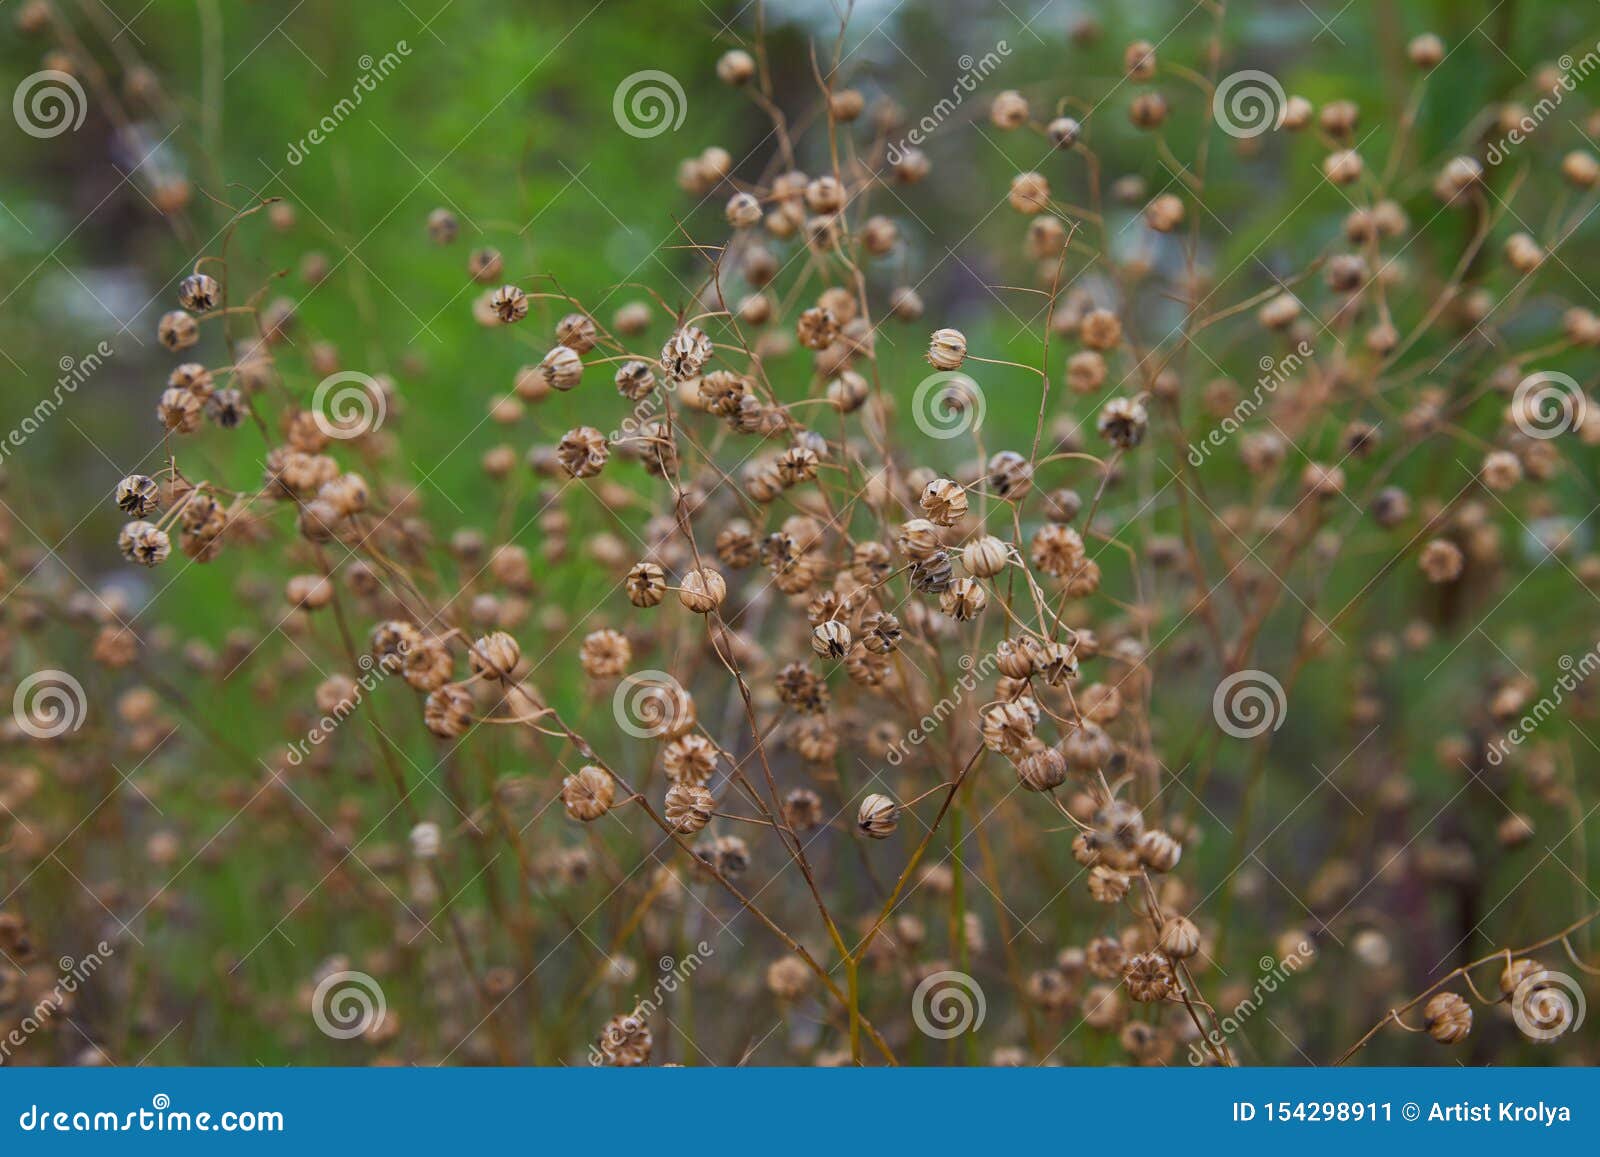 linum perenne perennial flax, blue flax or lint.